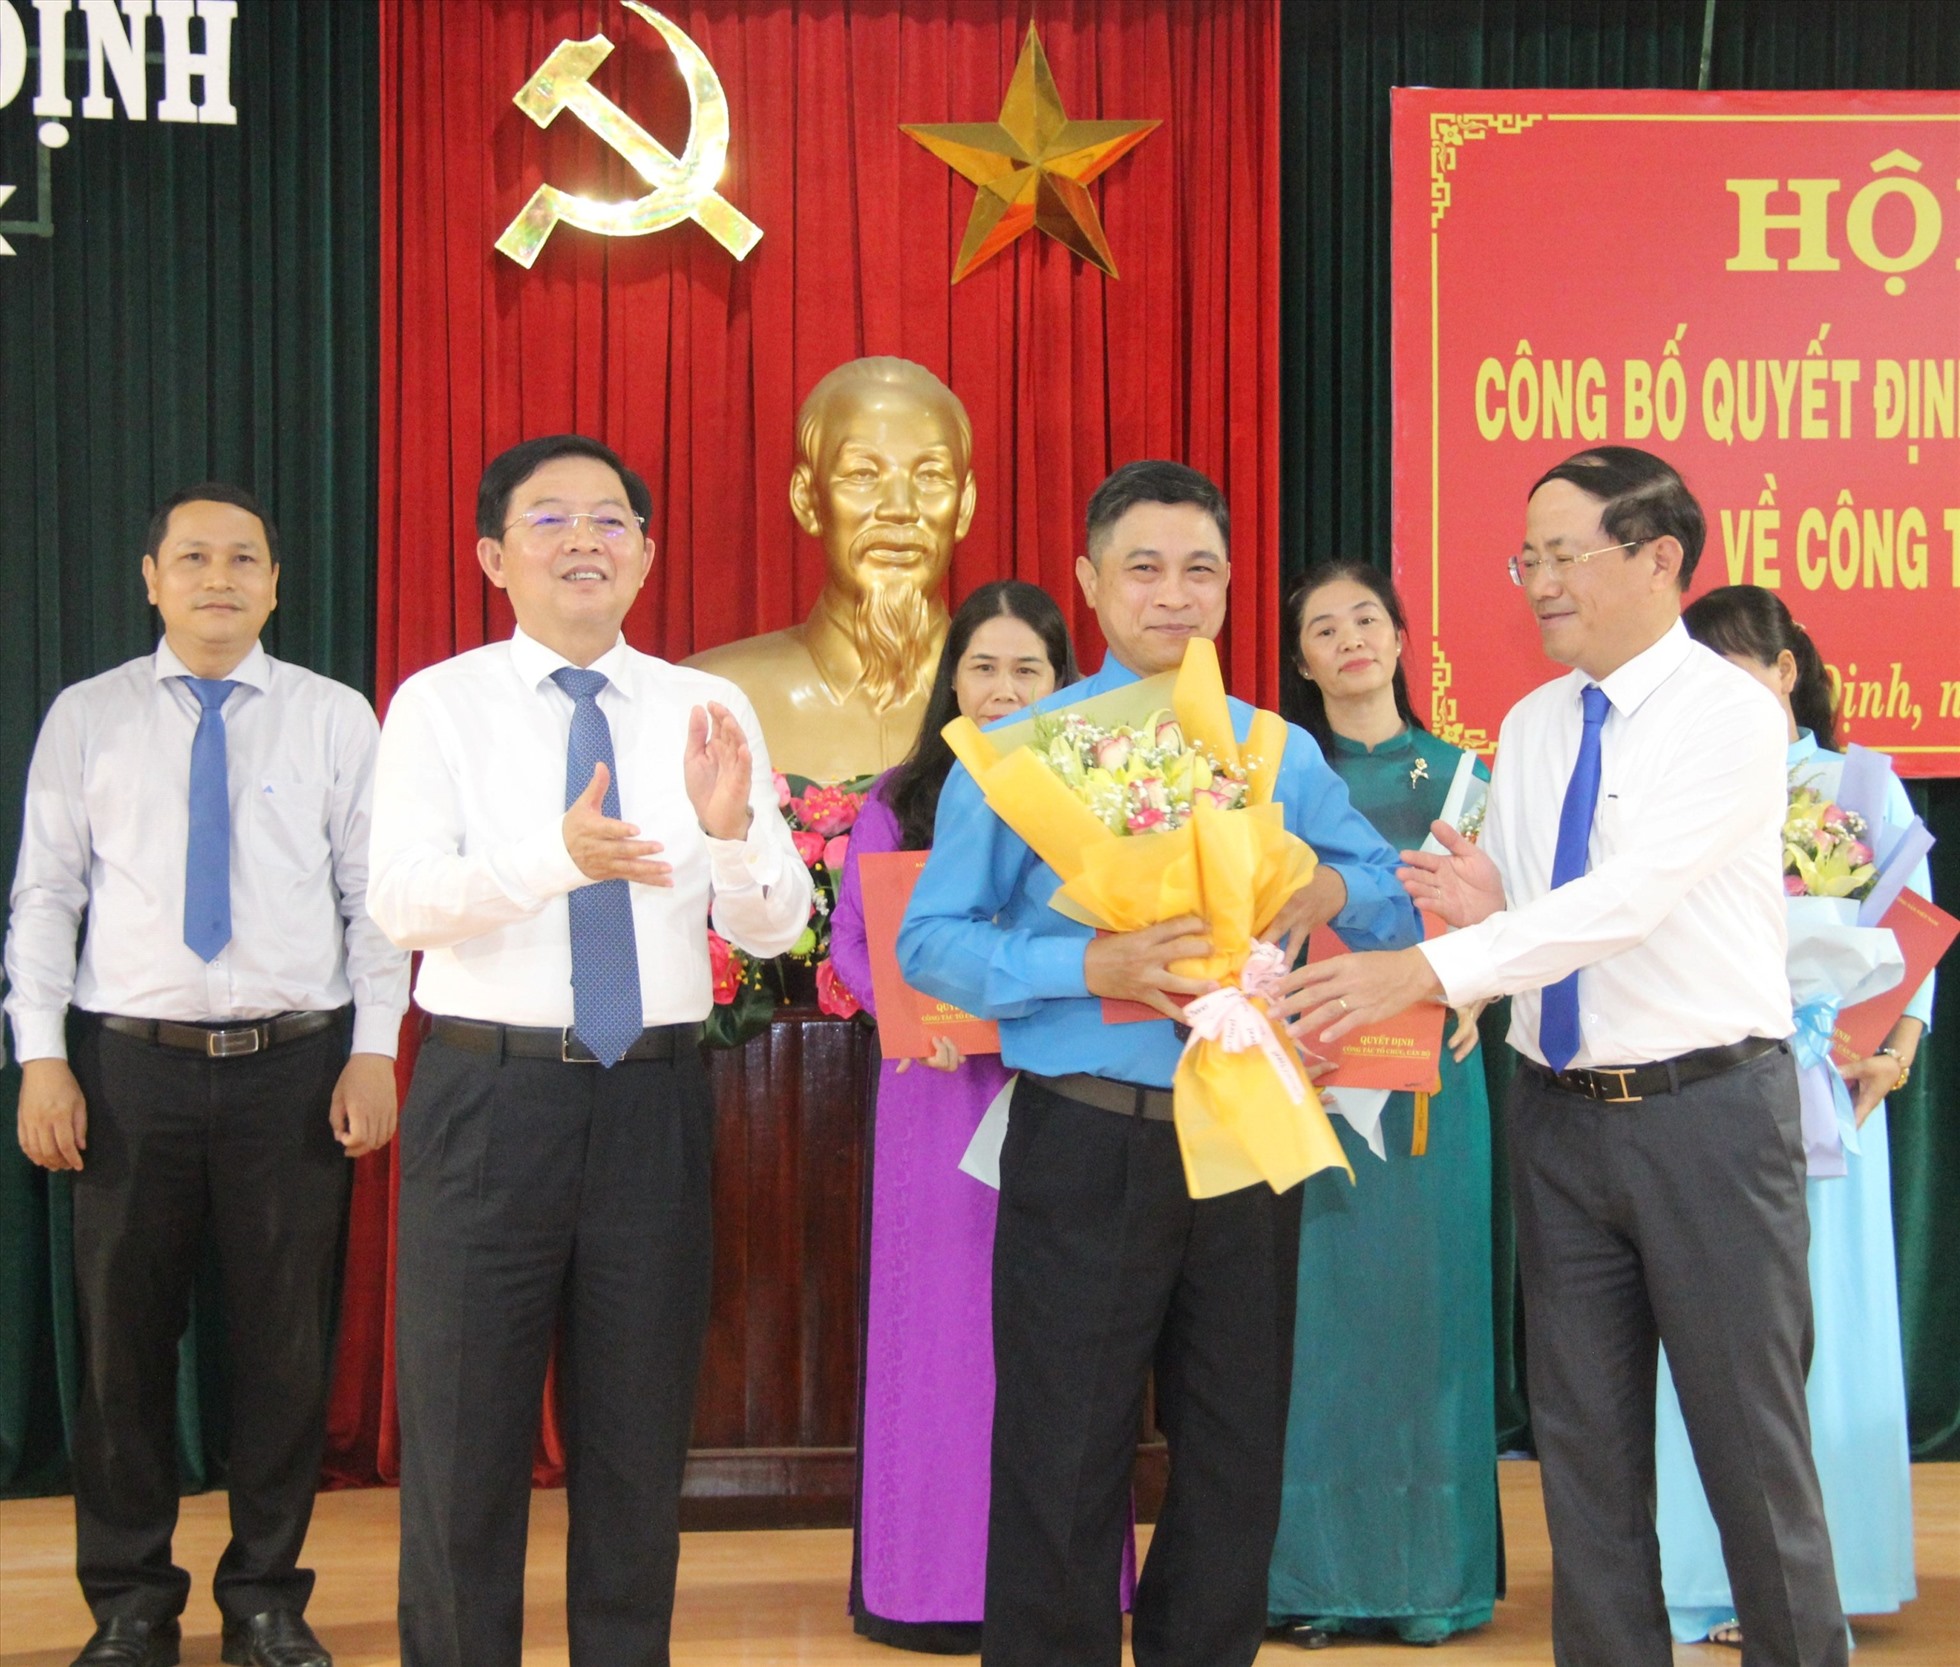 Ông Nguyễn Mạnh Hùng (áo xanh), nhận nhiệm vụ mới tại Ban Dân vận Tỉnh ủy Bình Định. Ảnh: Nguyễn Ngọc.